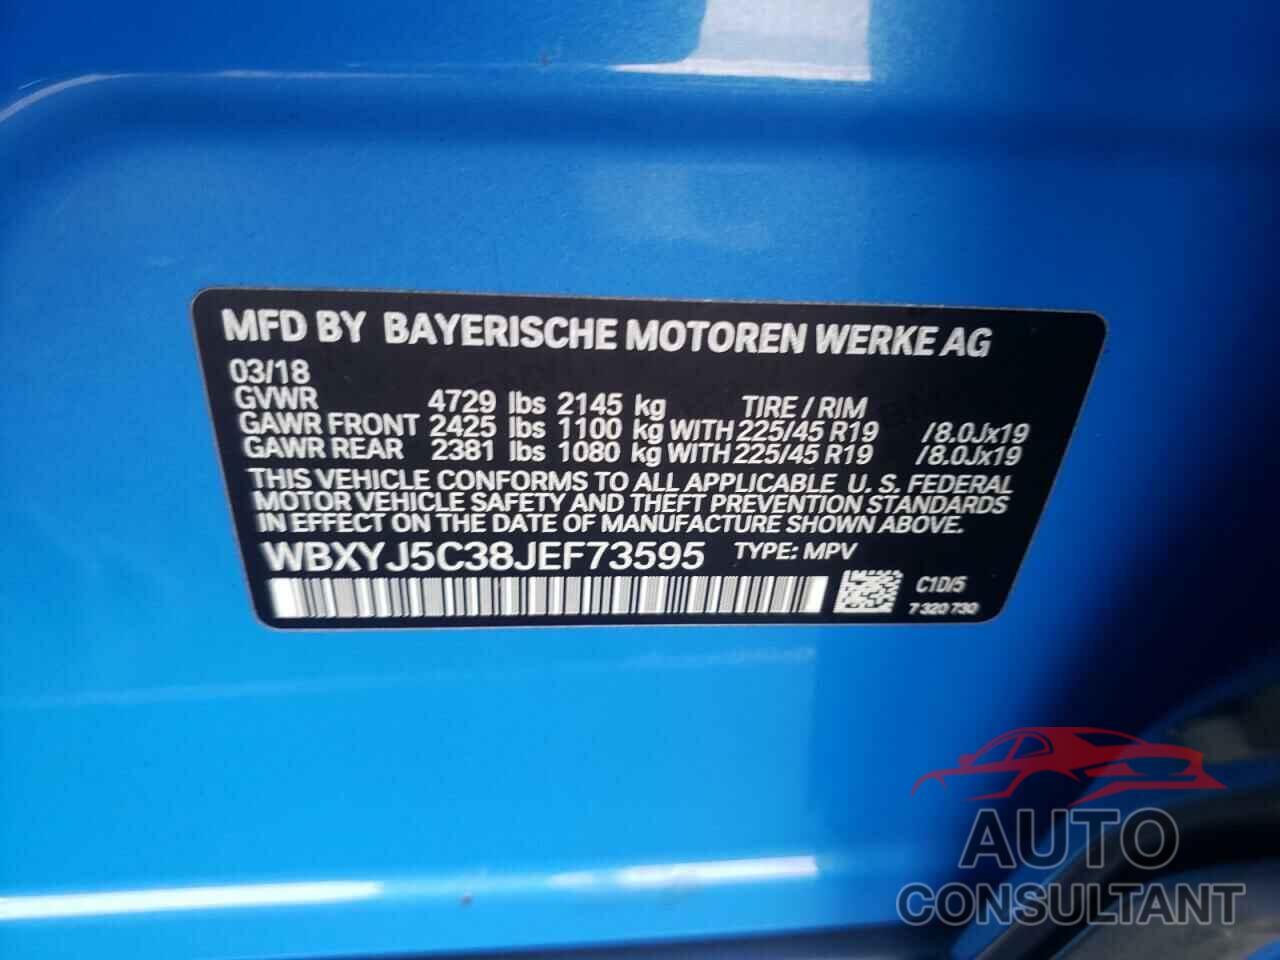 BMW X2 2018 - WBXYJ5C38JEF73595